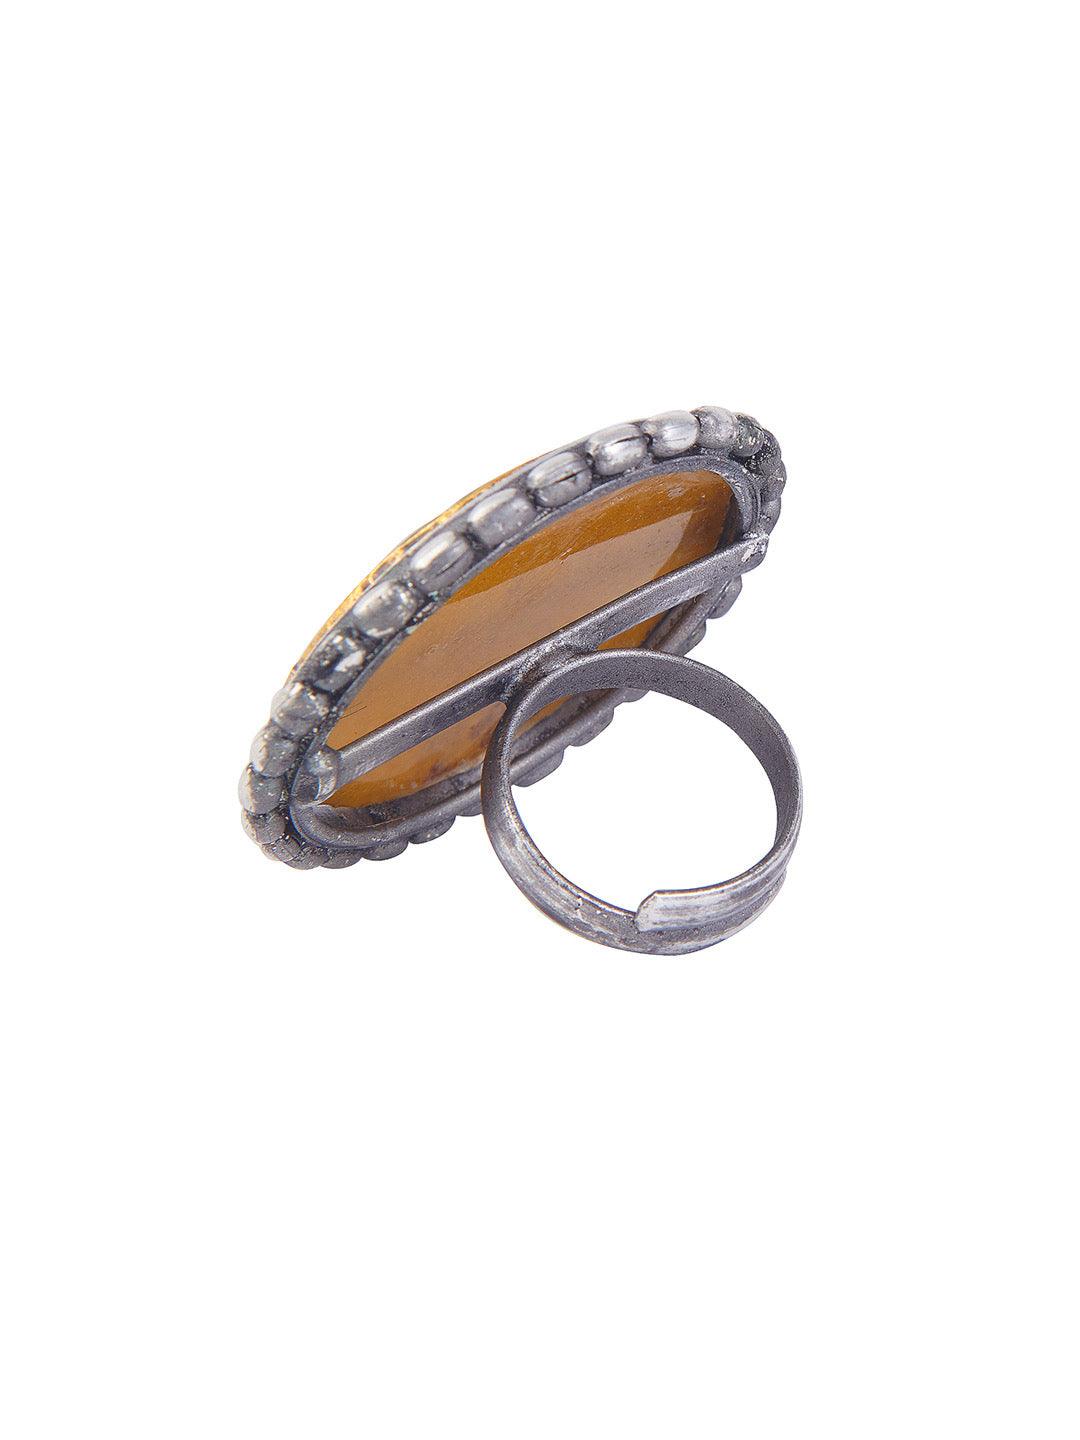 Aria Oxidised Vintage Enameled Ring - Onesize (FRO08) Aria Oxidised Vintage Enameled Ring